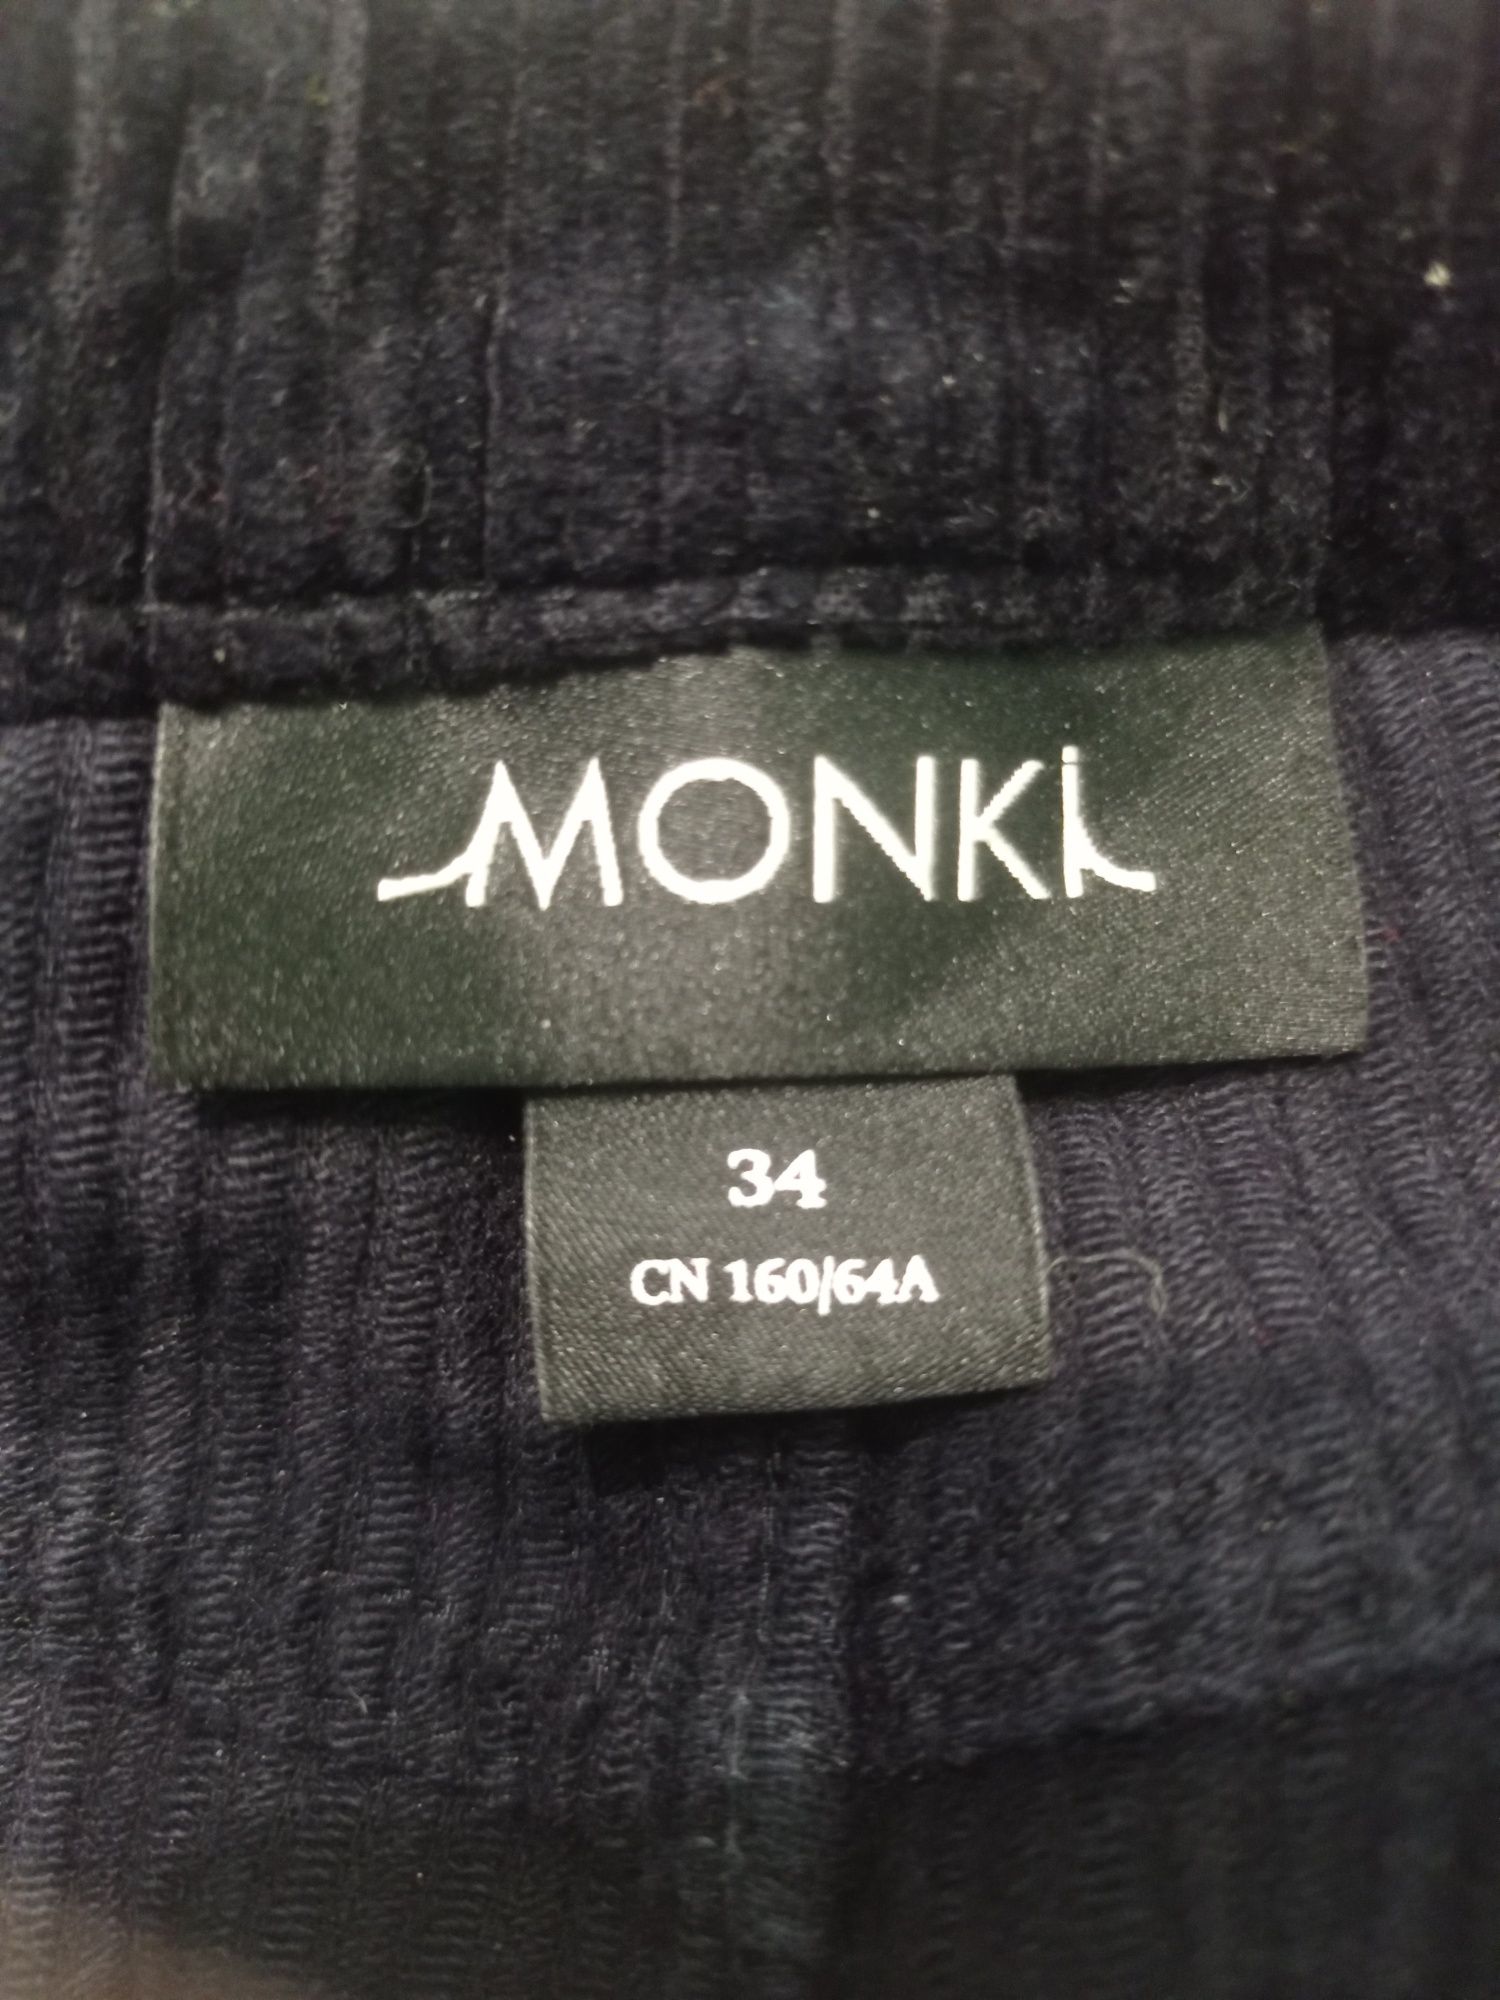 Лот одежды для девушки (2 штанов и свитер)Monki